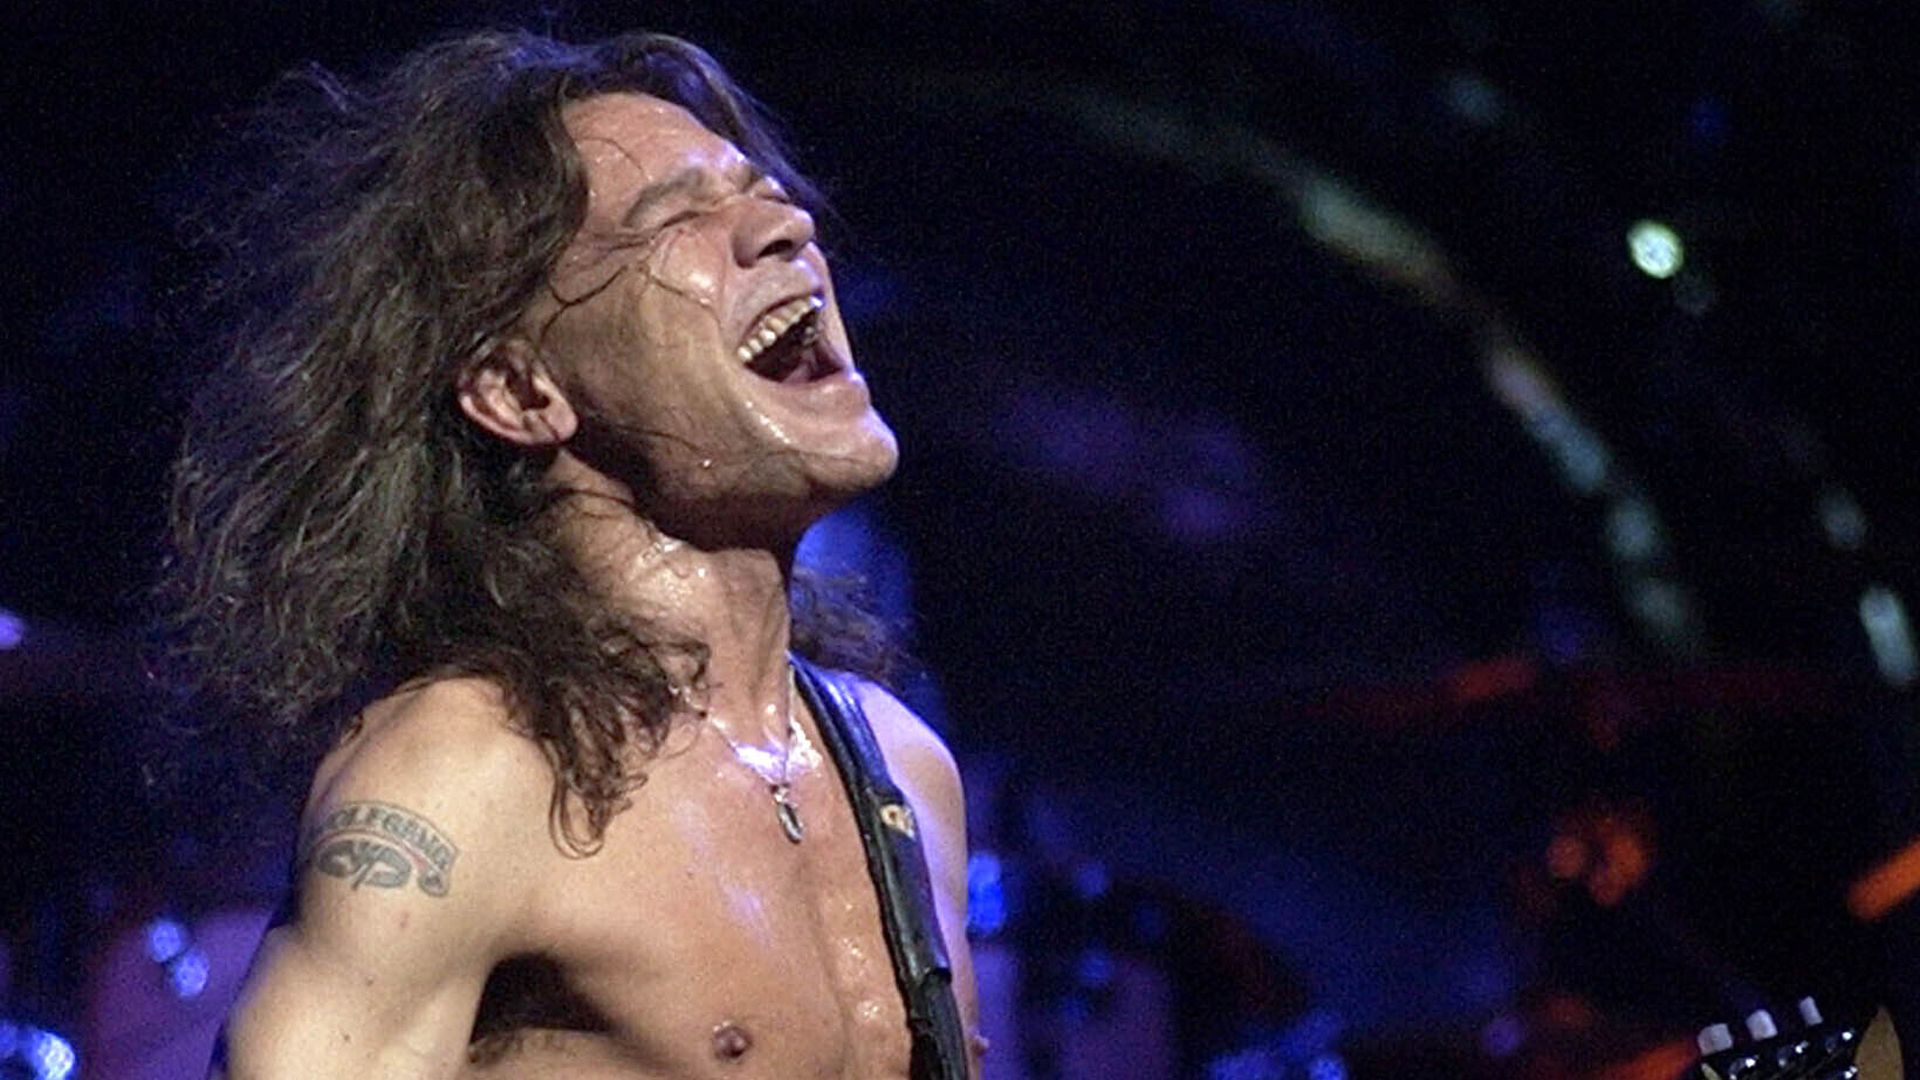 Eddie Van Halen, guitar god of the rock generation, dies at 65